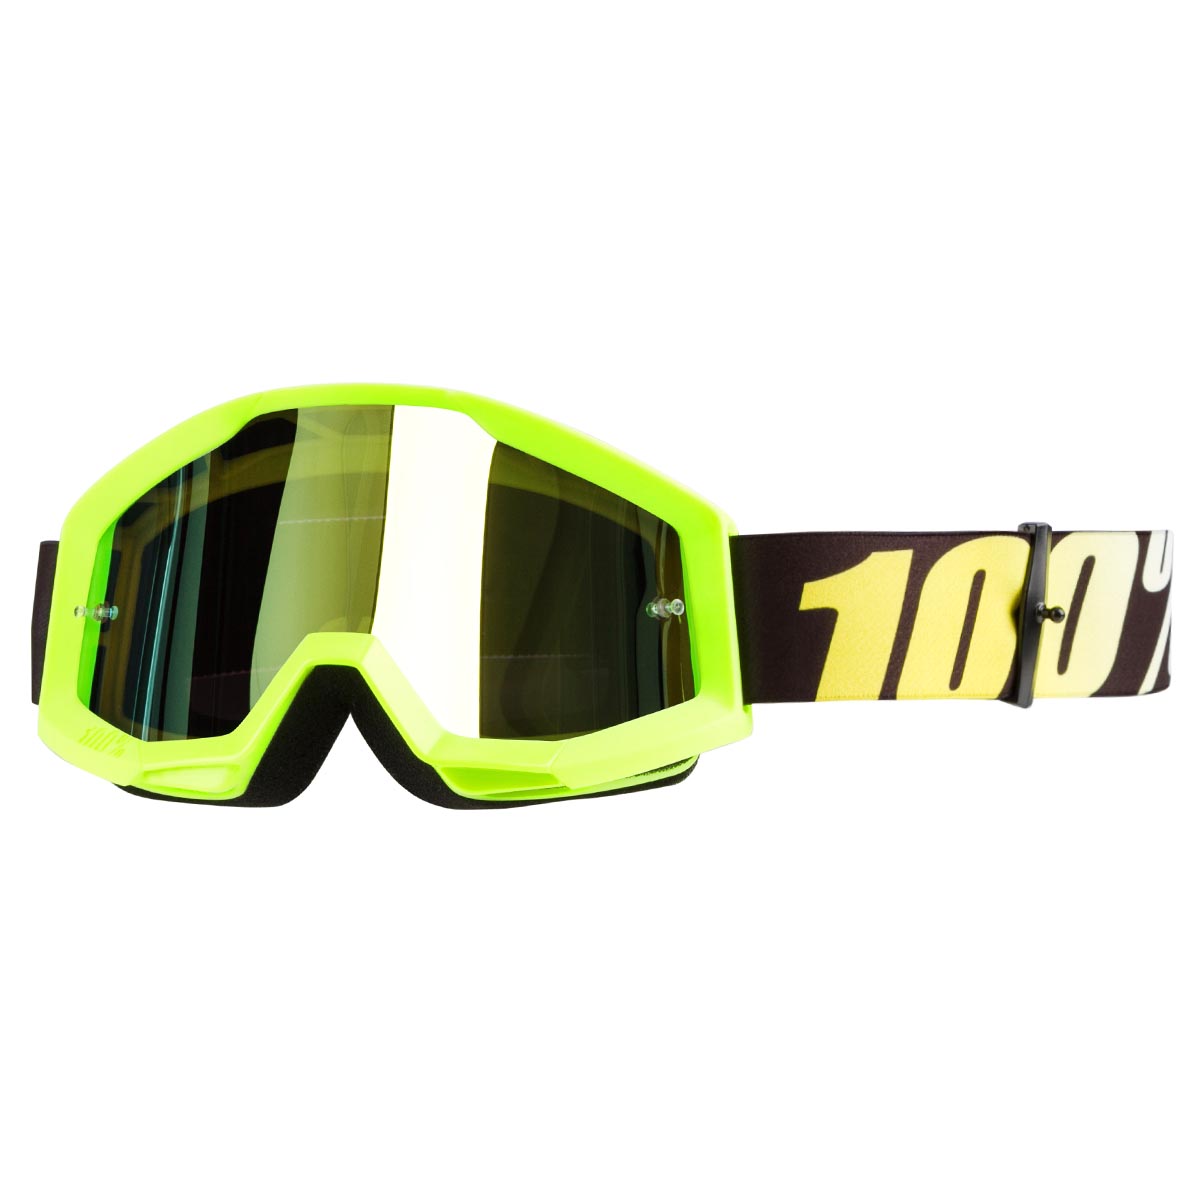 100% Kids Crossbrille Strata Neongelb - Gelb verspiegelt Anti-Fog